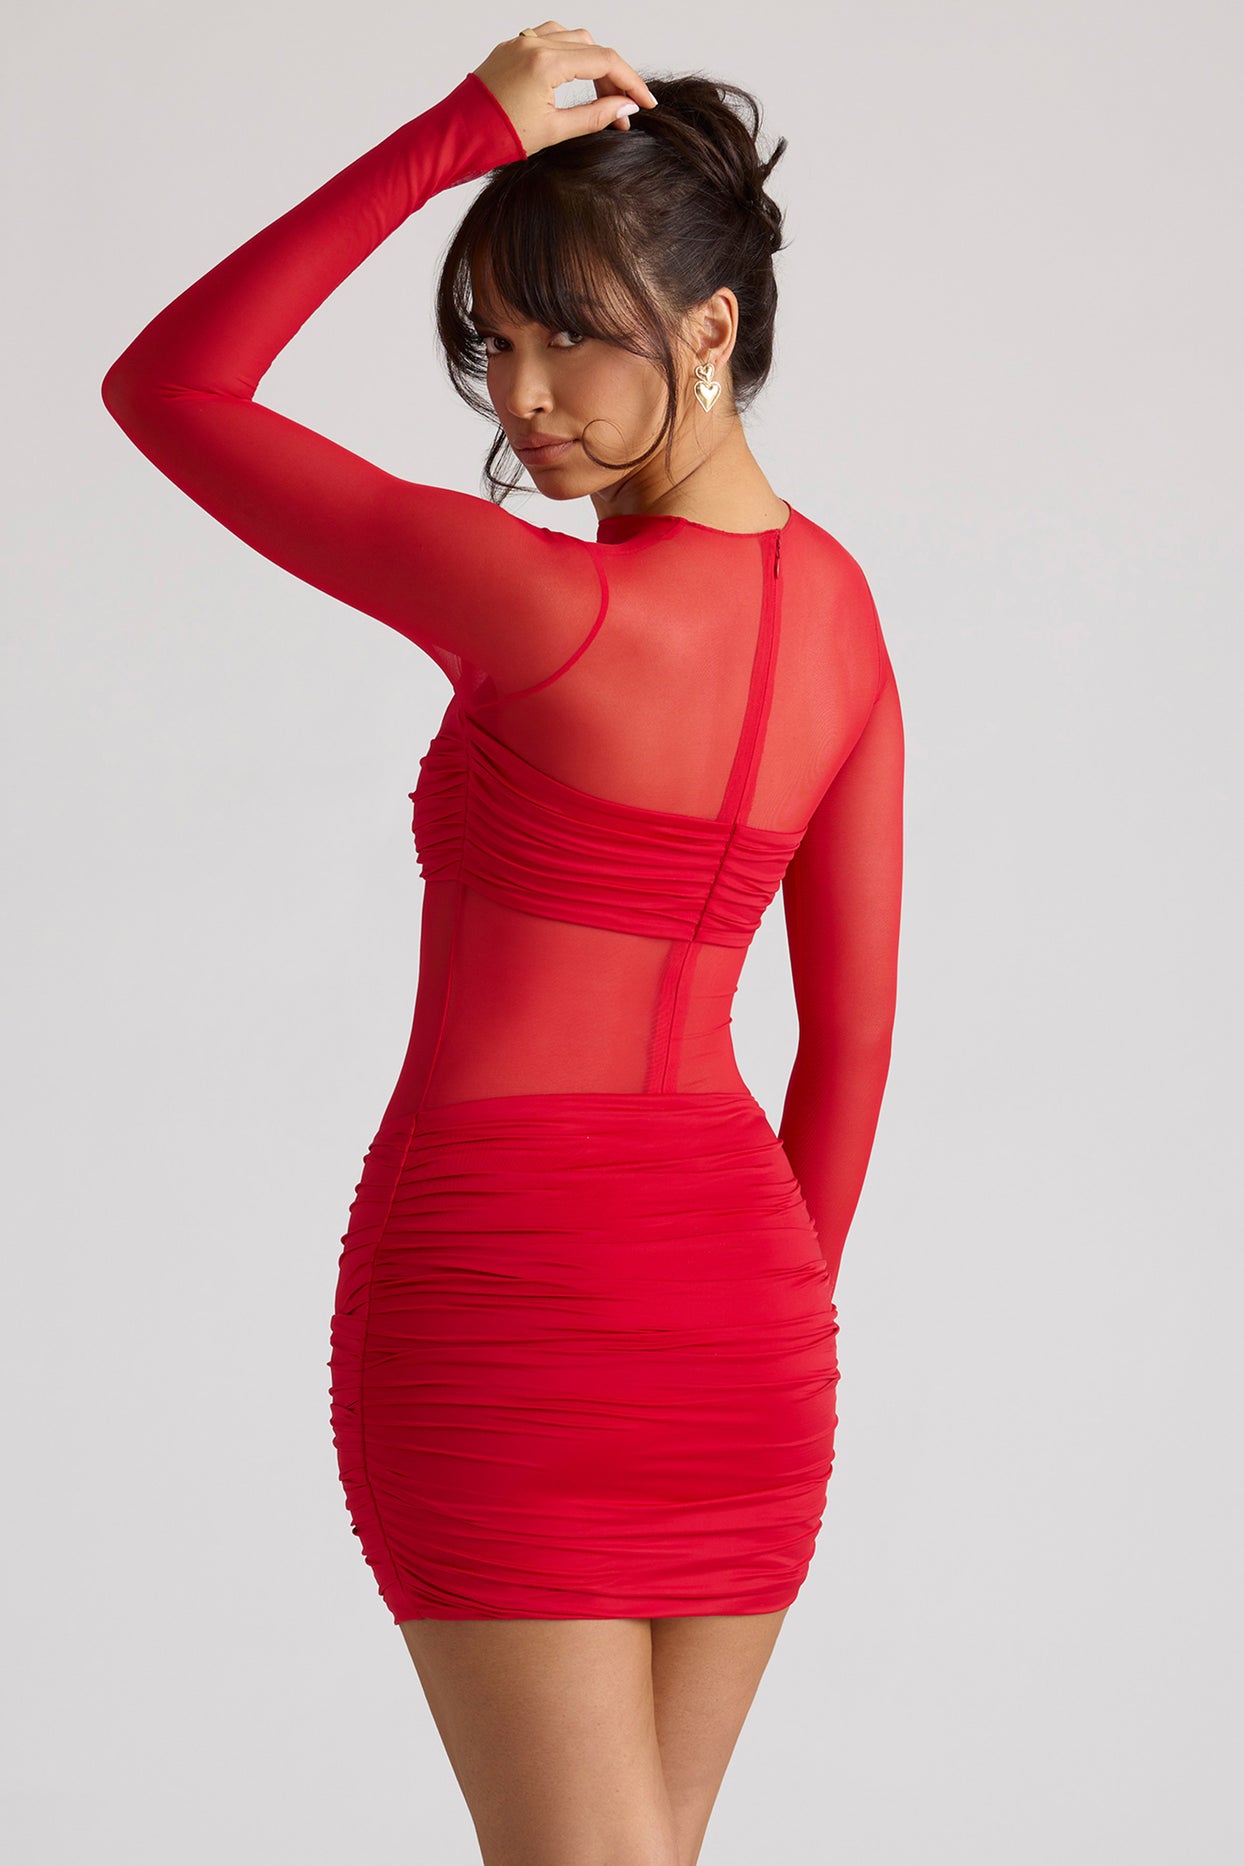 Przezroczysta, panelowa sukienka mini z długim rękawem w kolorze ognistej czerwieni